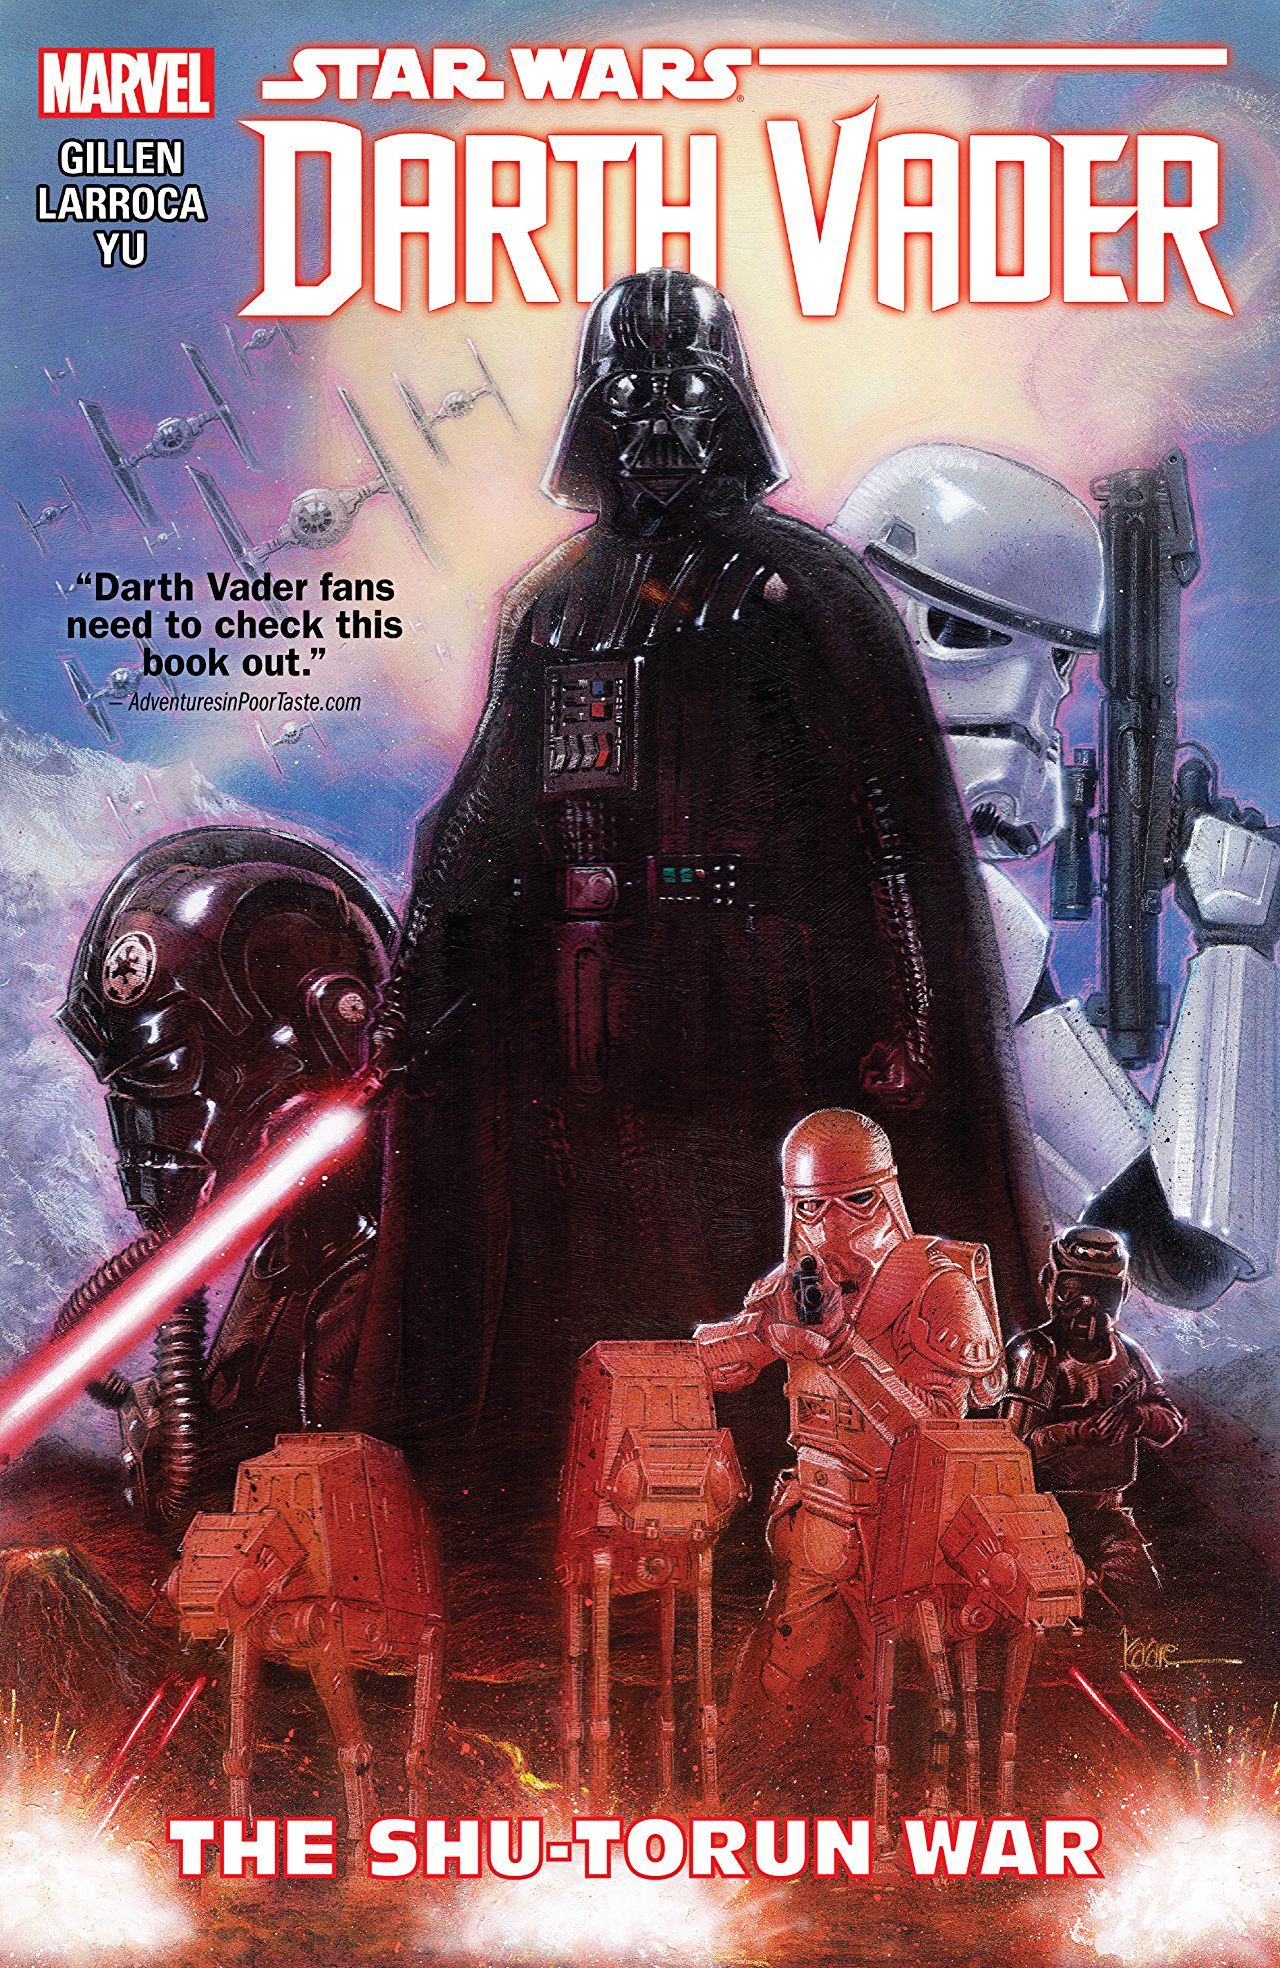 Star Wars: Darth Vader, Vol. 3: The Shu-Torun War by Kieron Gillen